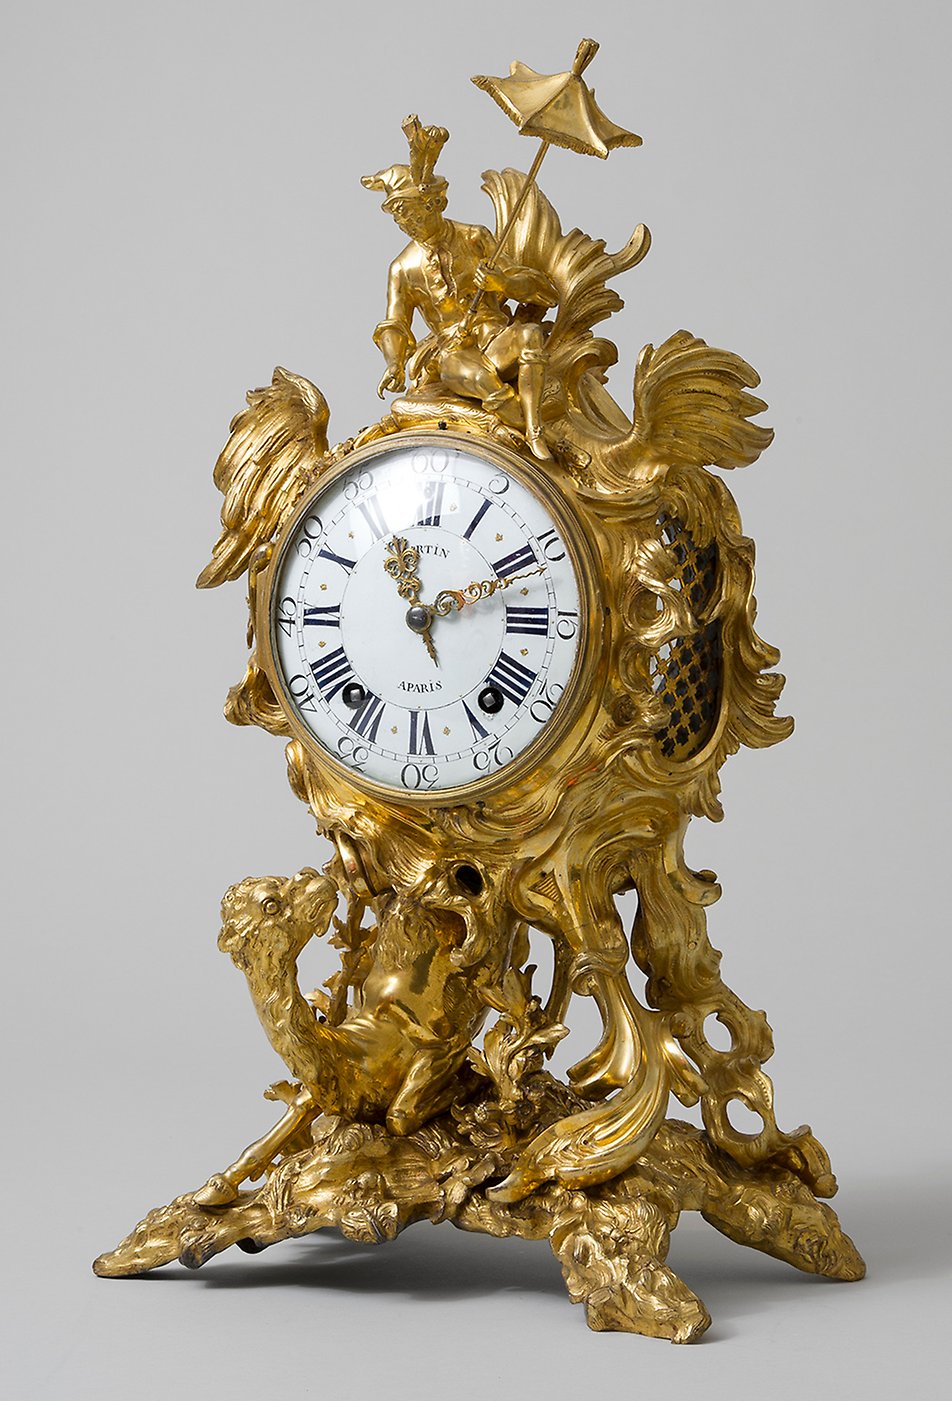 Det fantasieggande uret med dromedaren tillhör Gustaf V:s möbleringar på Tullgarn, men det är egentligen betydligt äldre, utfört i Paris under senare delen av 1740-talet. En generation senare ägdes det av Axel von Fersen d y, som länge var i fransk tjänst. Gissningsvis medförde han uret, då han återvände hem till Sverige.